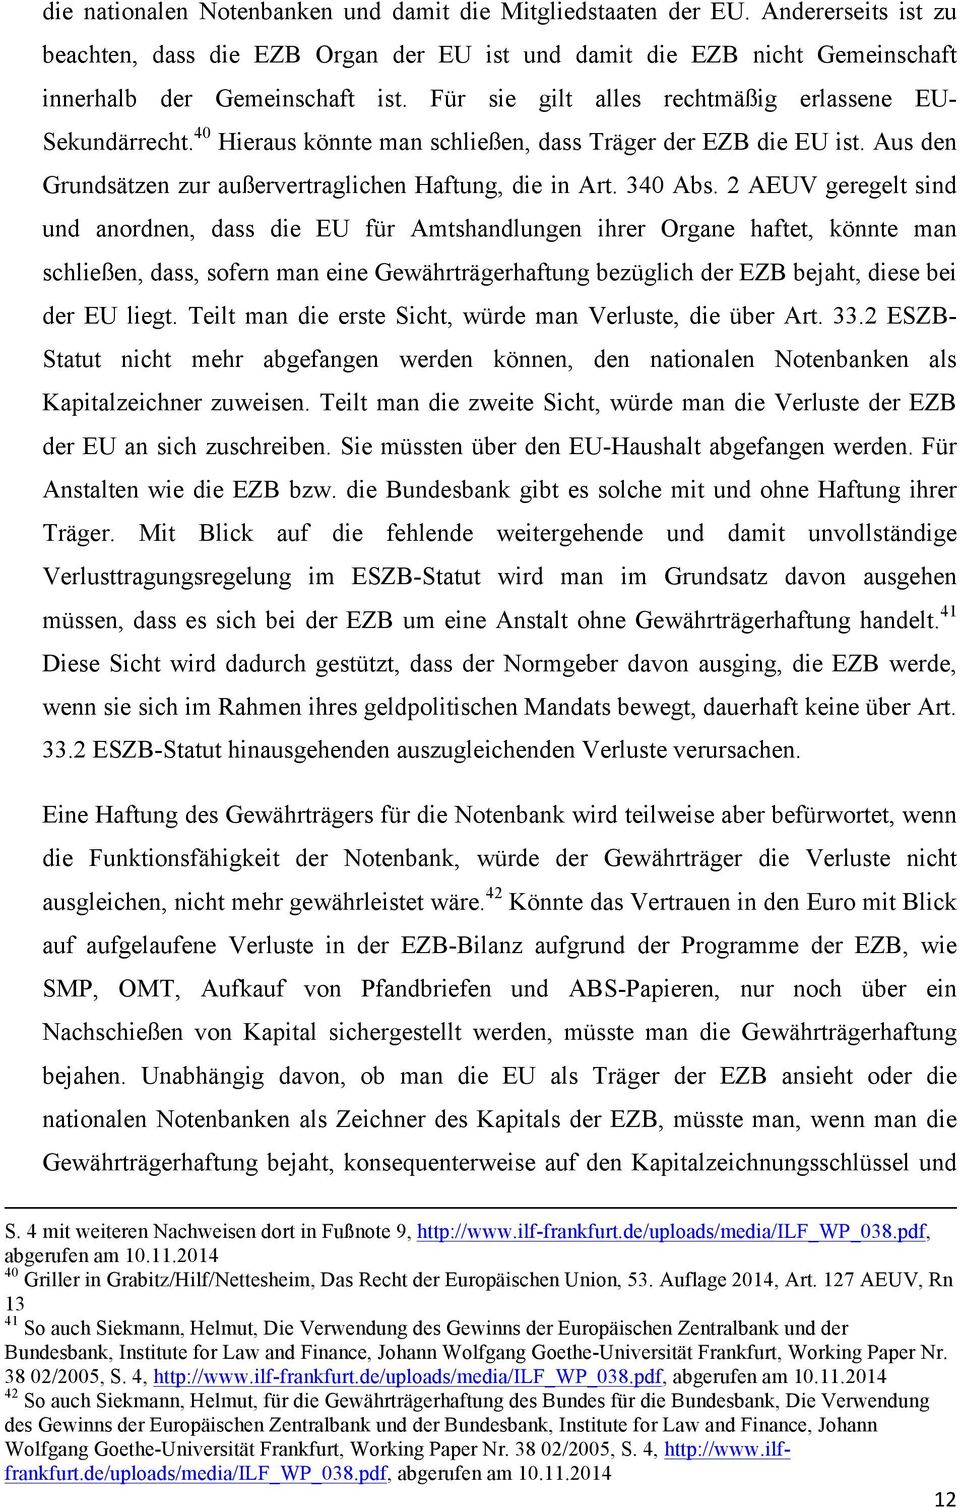 2 AEUV geregelt sind und anordnen, dass die EU für Amtshandlungen ihrer Organe haftet, könnte man schließen, dass, sofern man eine Gewährträgerhaftung bezüglich der EZB bejaht, diese bei der EU liegt.